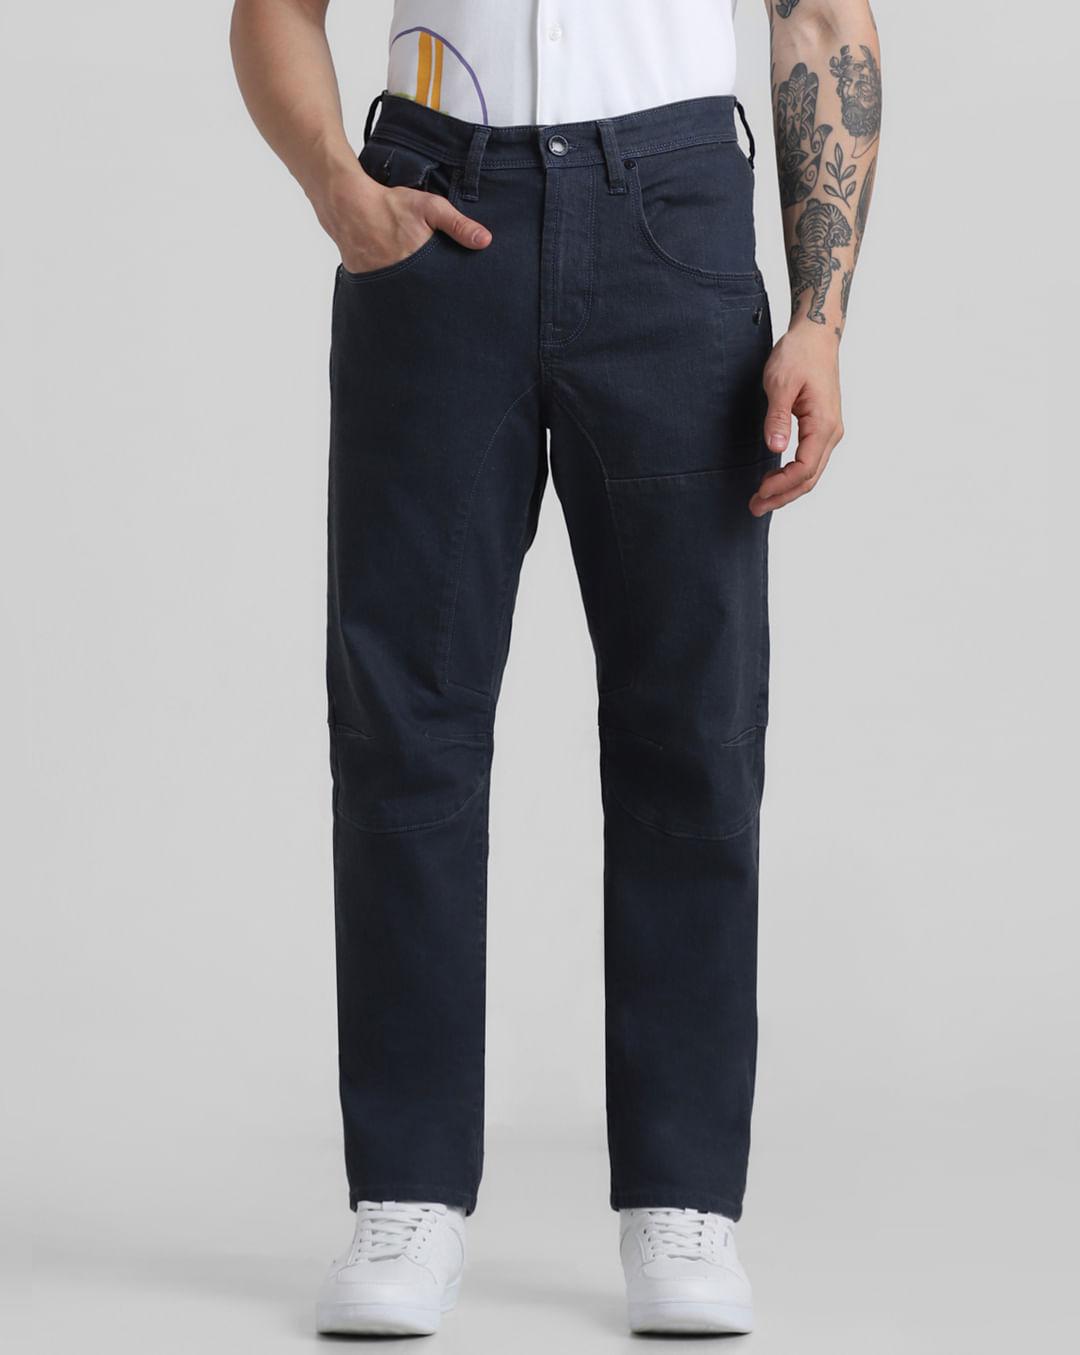 dark-grey-low-rise-cut-&-sew-anti-fit-jeans